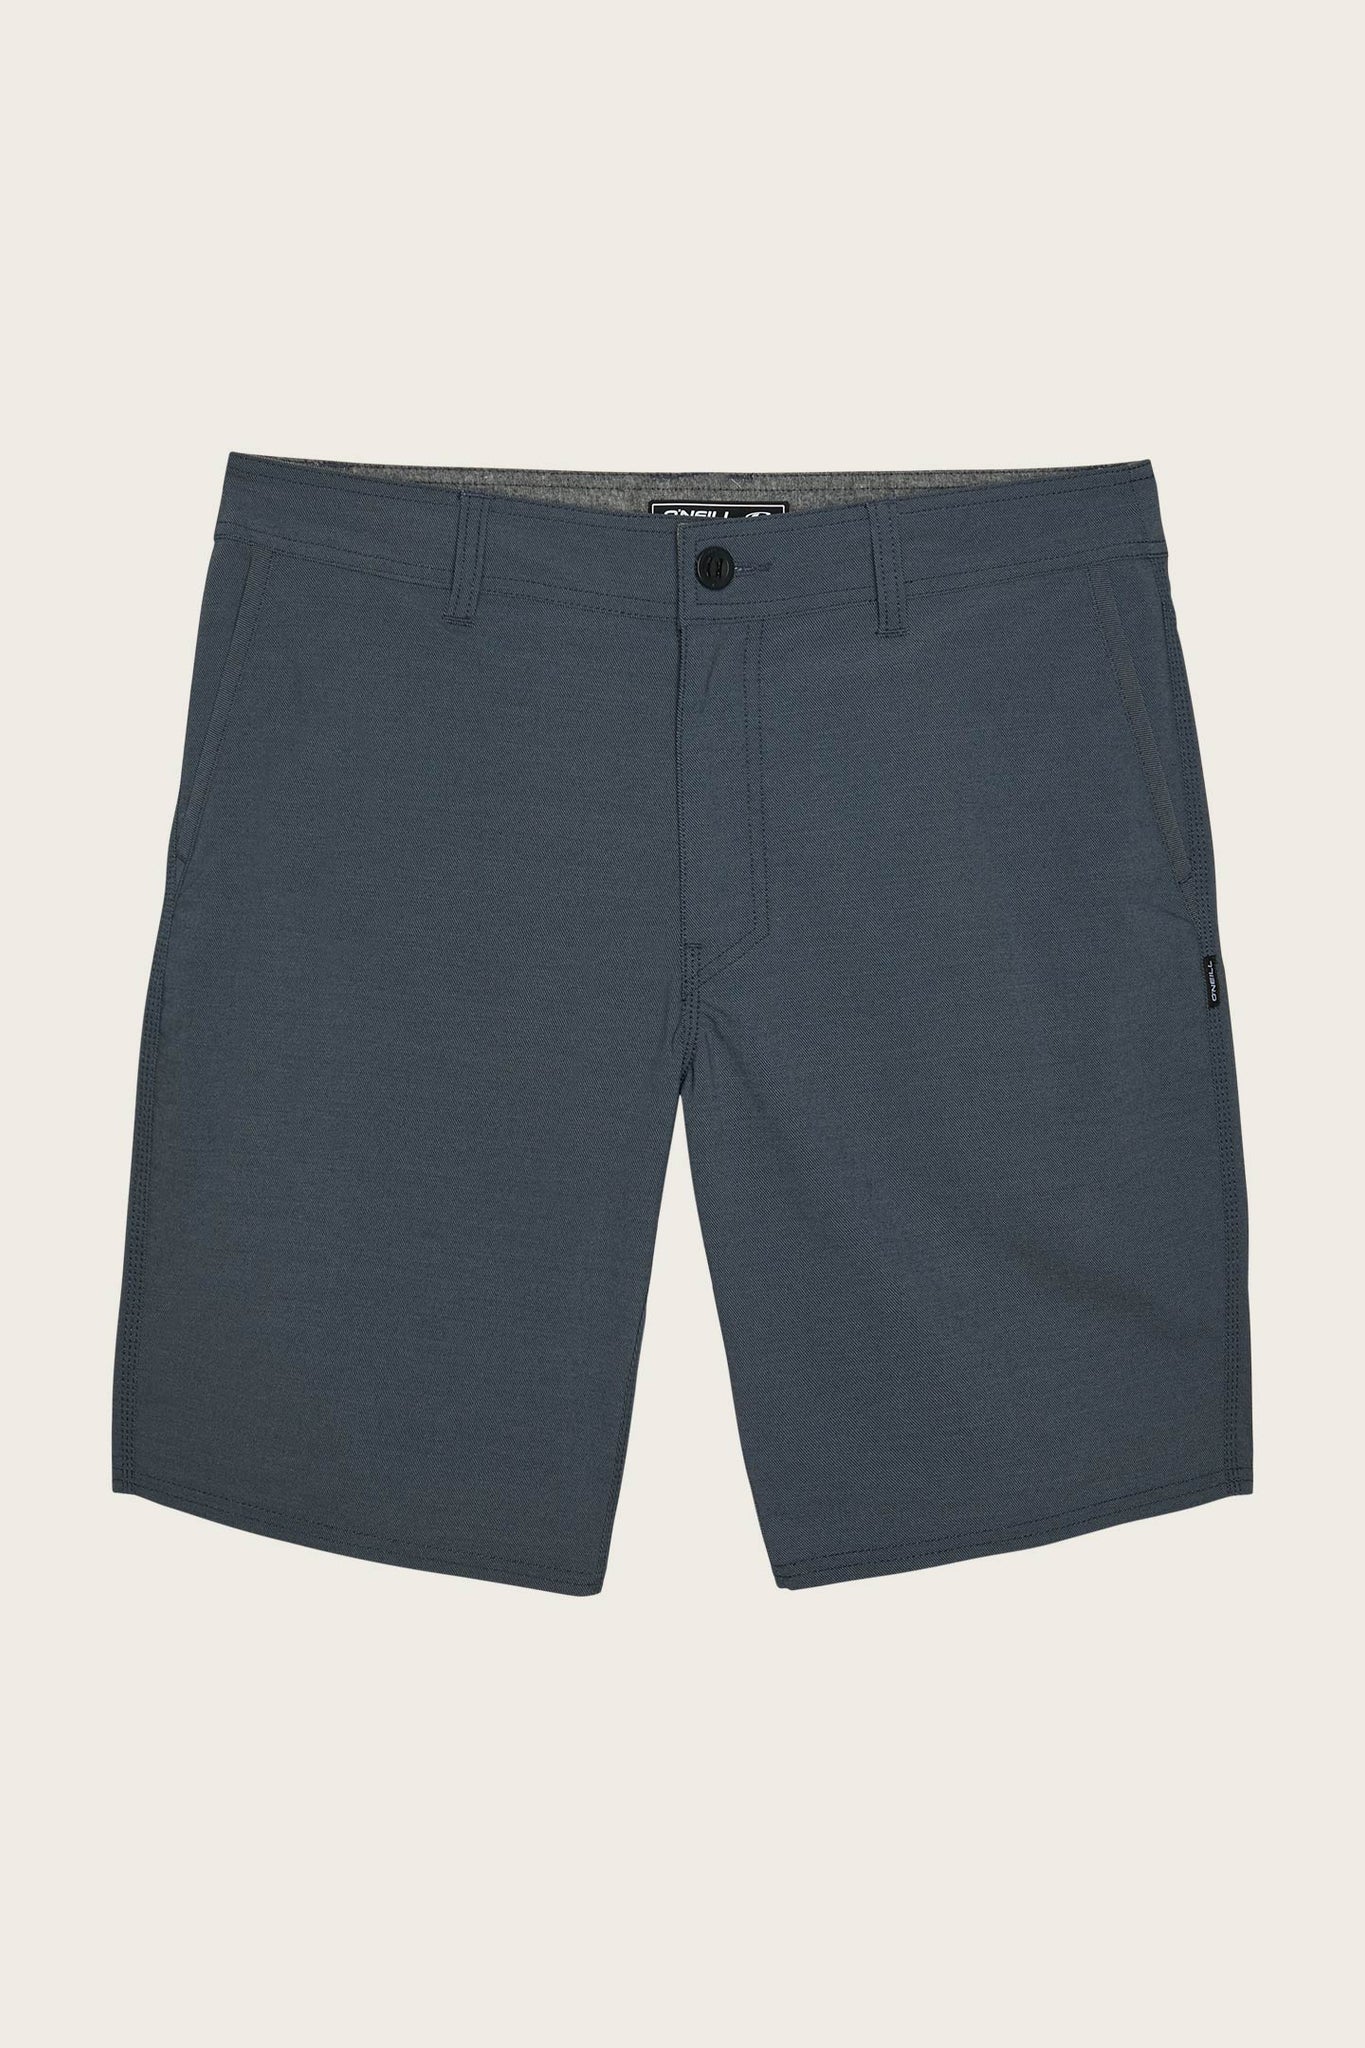 Stockton Hybrid Shorts - Navy | O'Neill